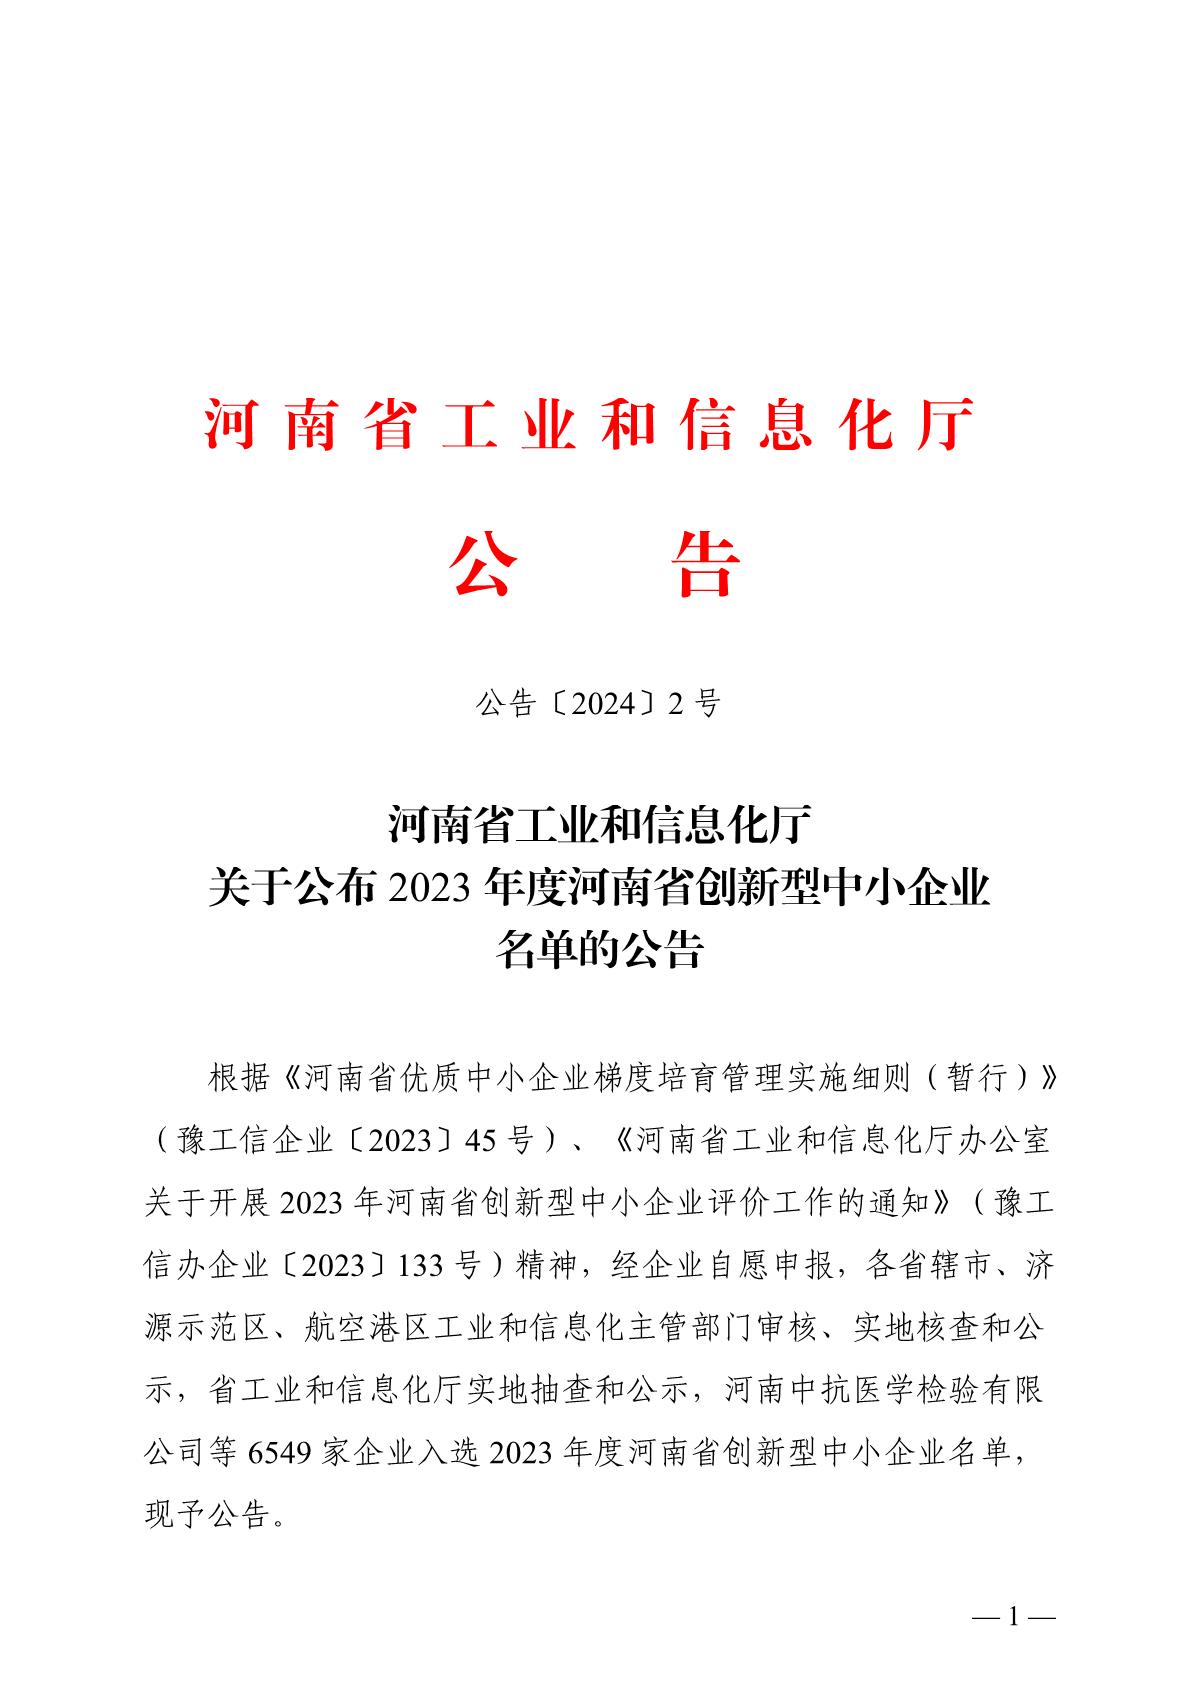 河南省工业和信息化厅关于公布2023年度河南省创新型中小企业名单的公告